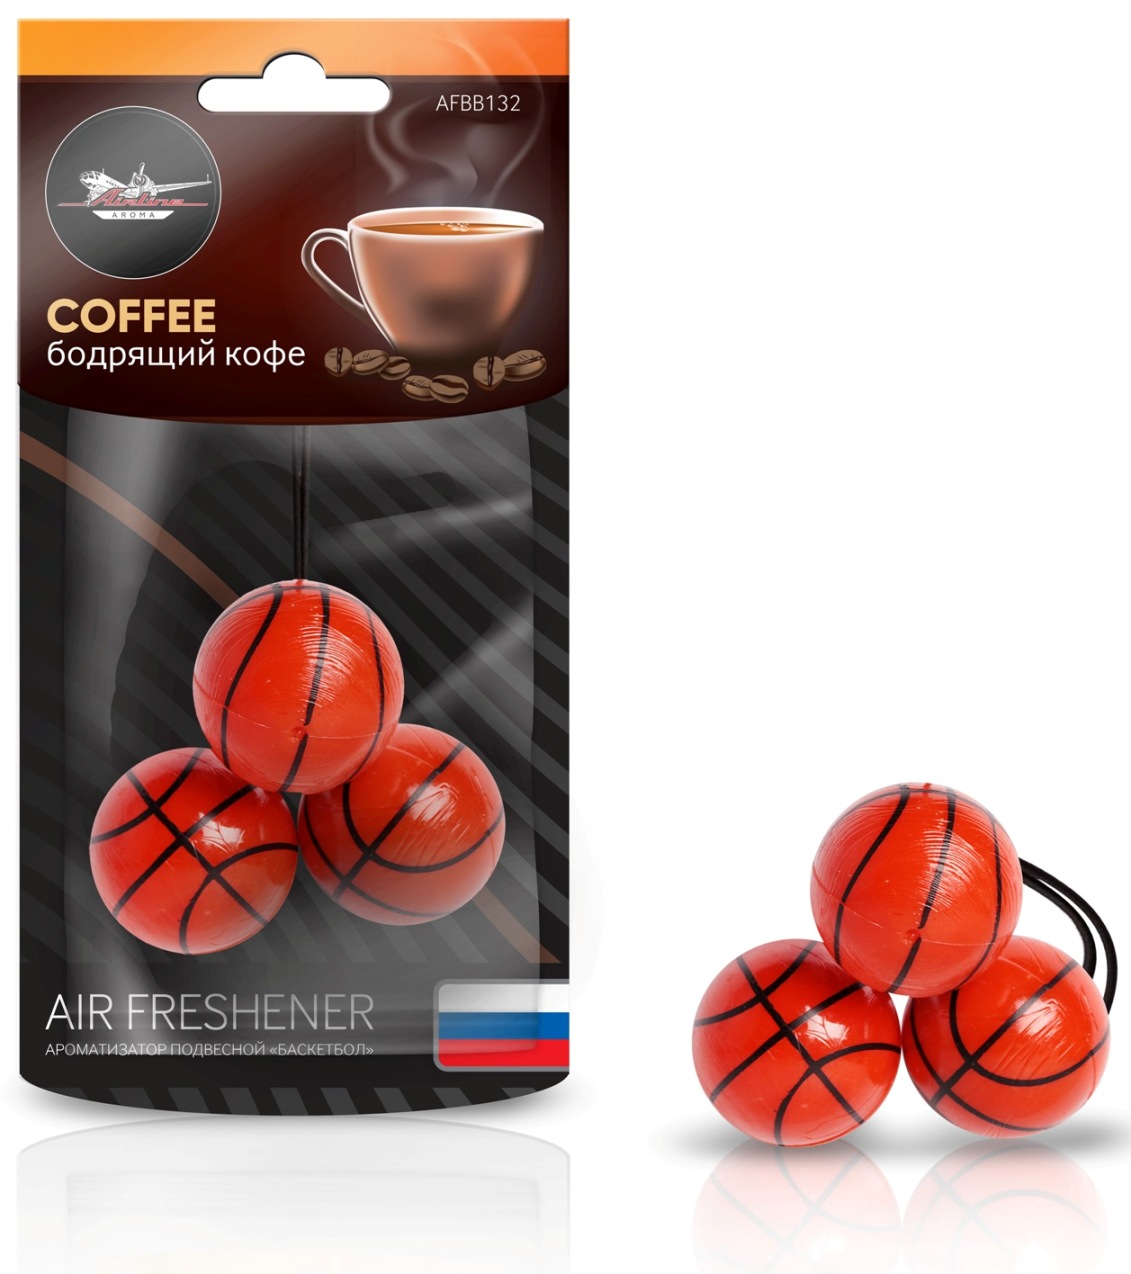 "Баскетбол" Бодрящий кофе